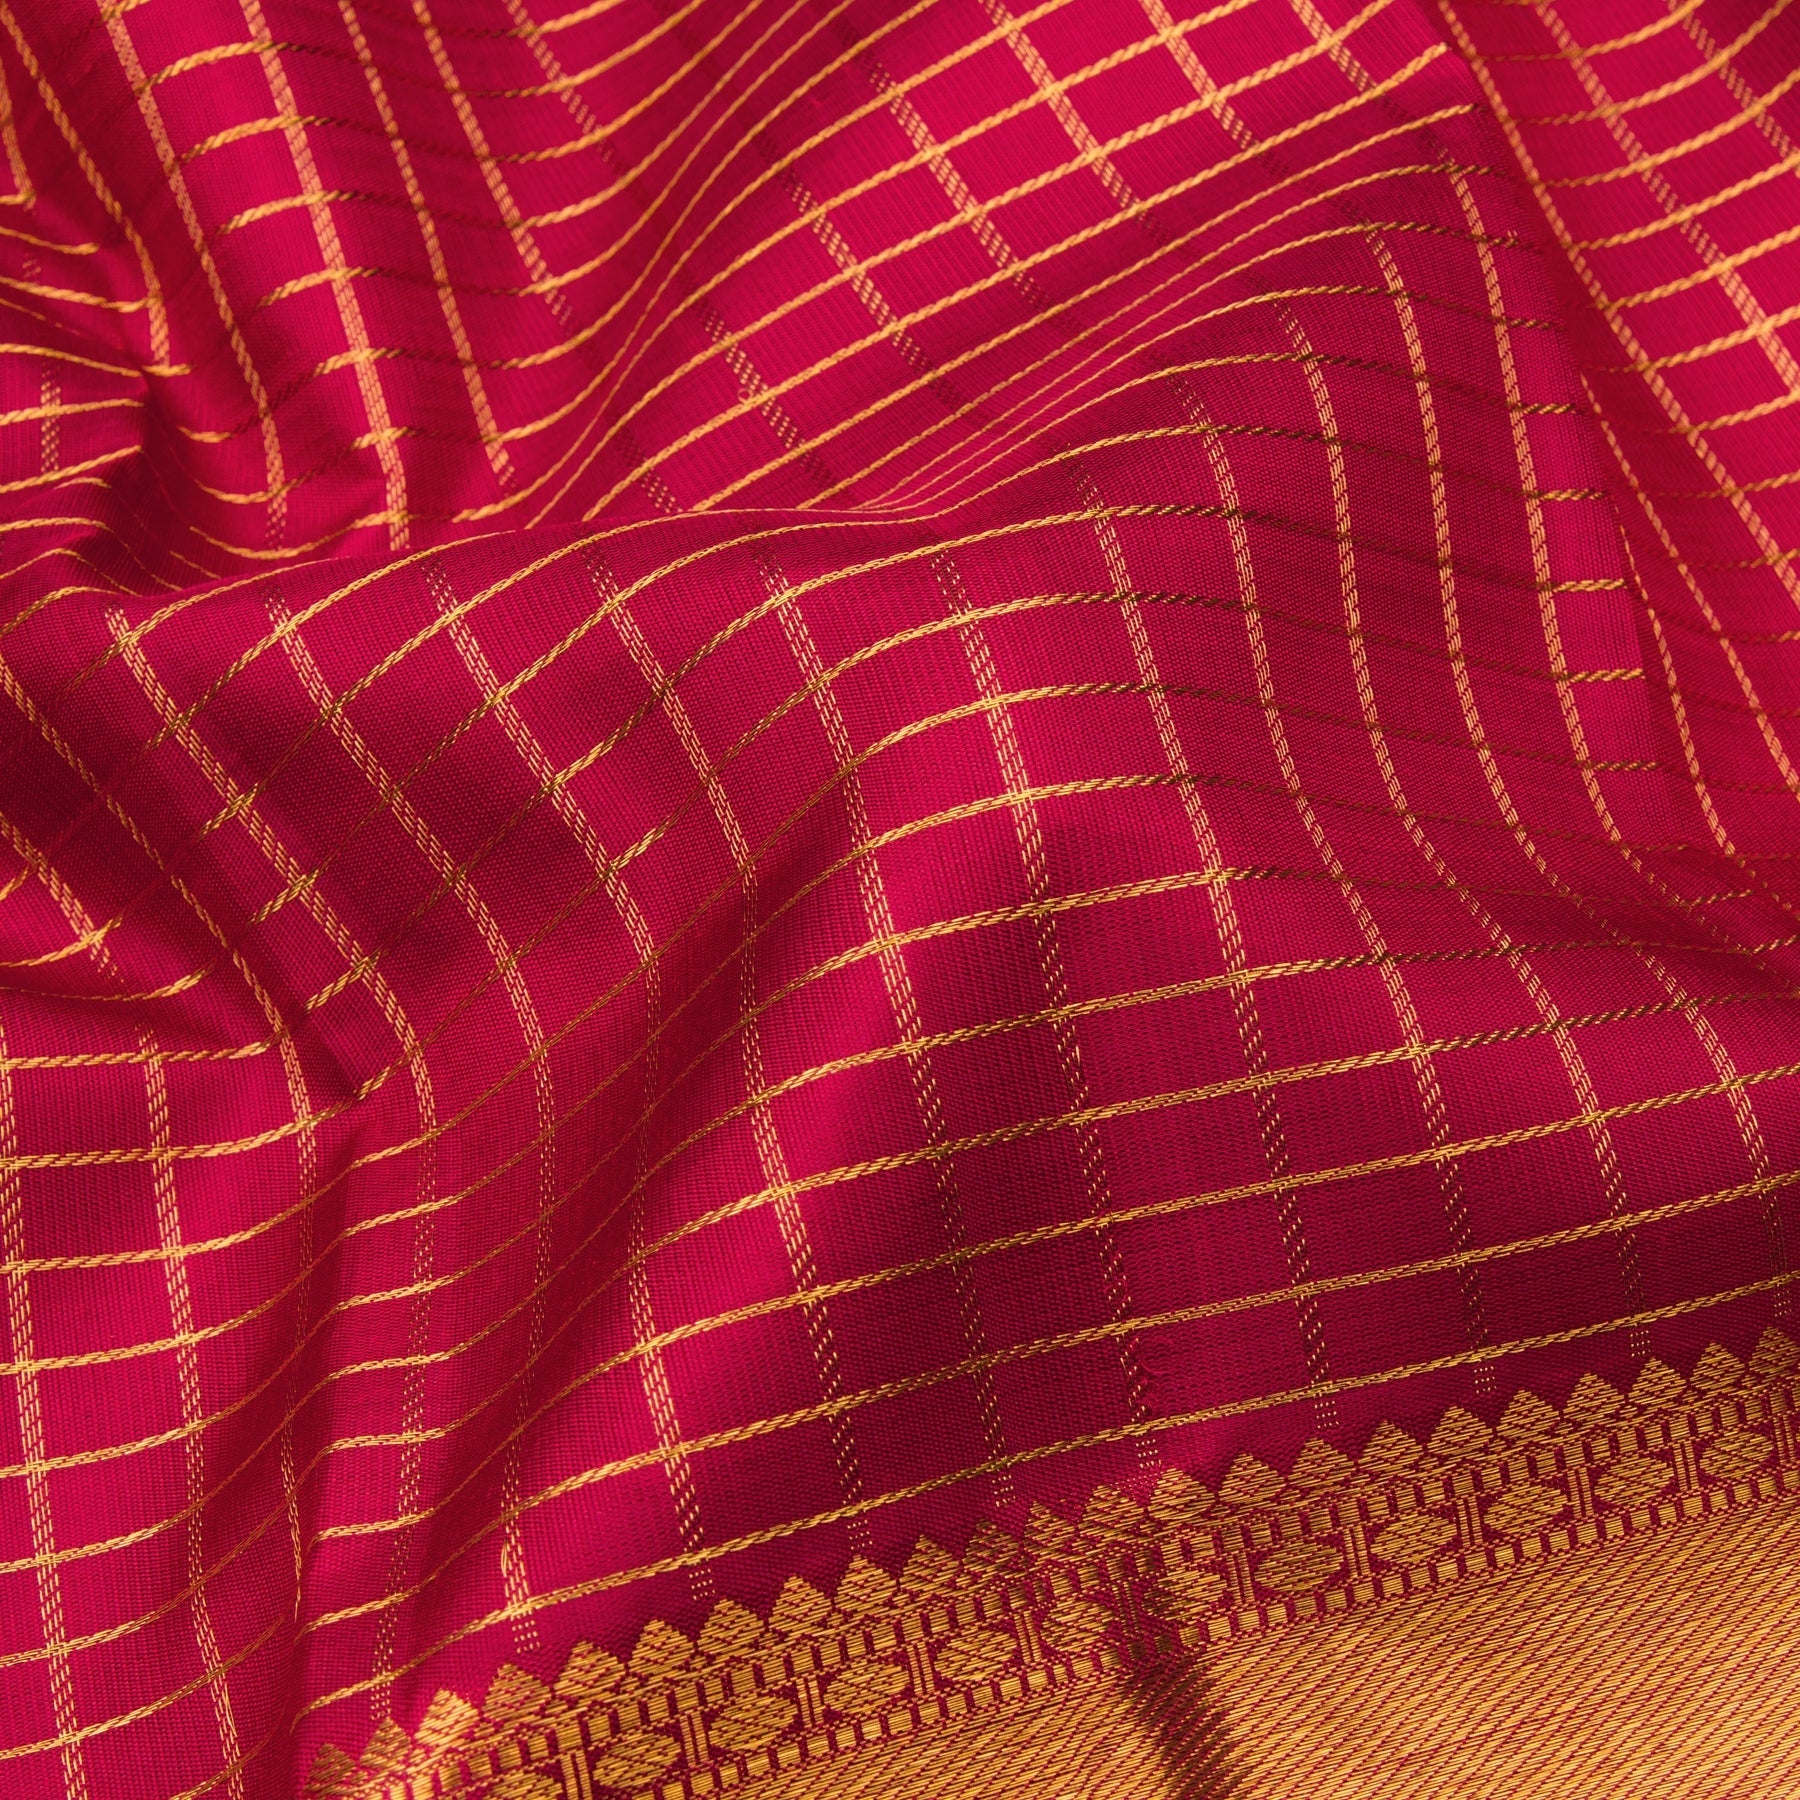 Kanakavalli Kanjivaram Silk Sari 23-599-HS001-08212 - Fabric View